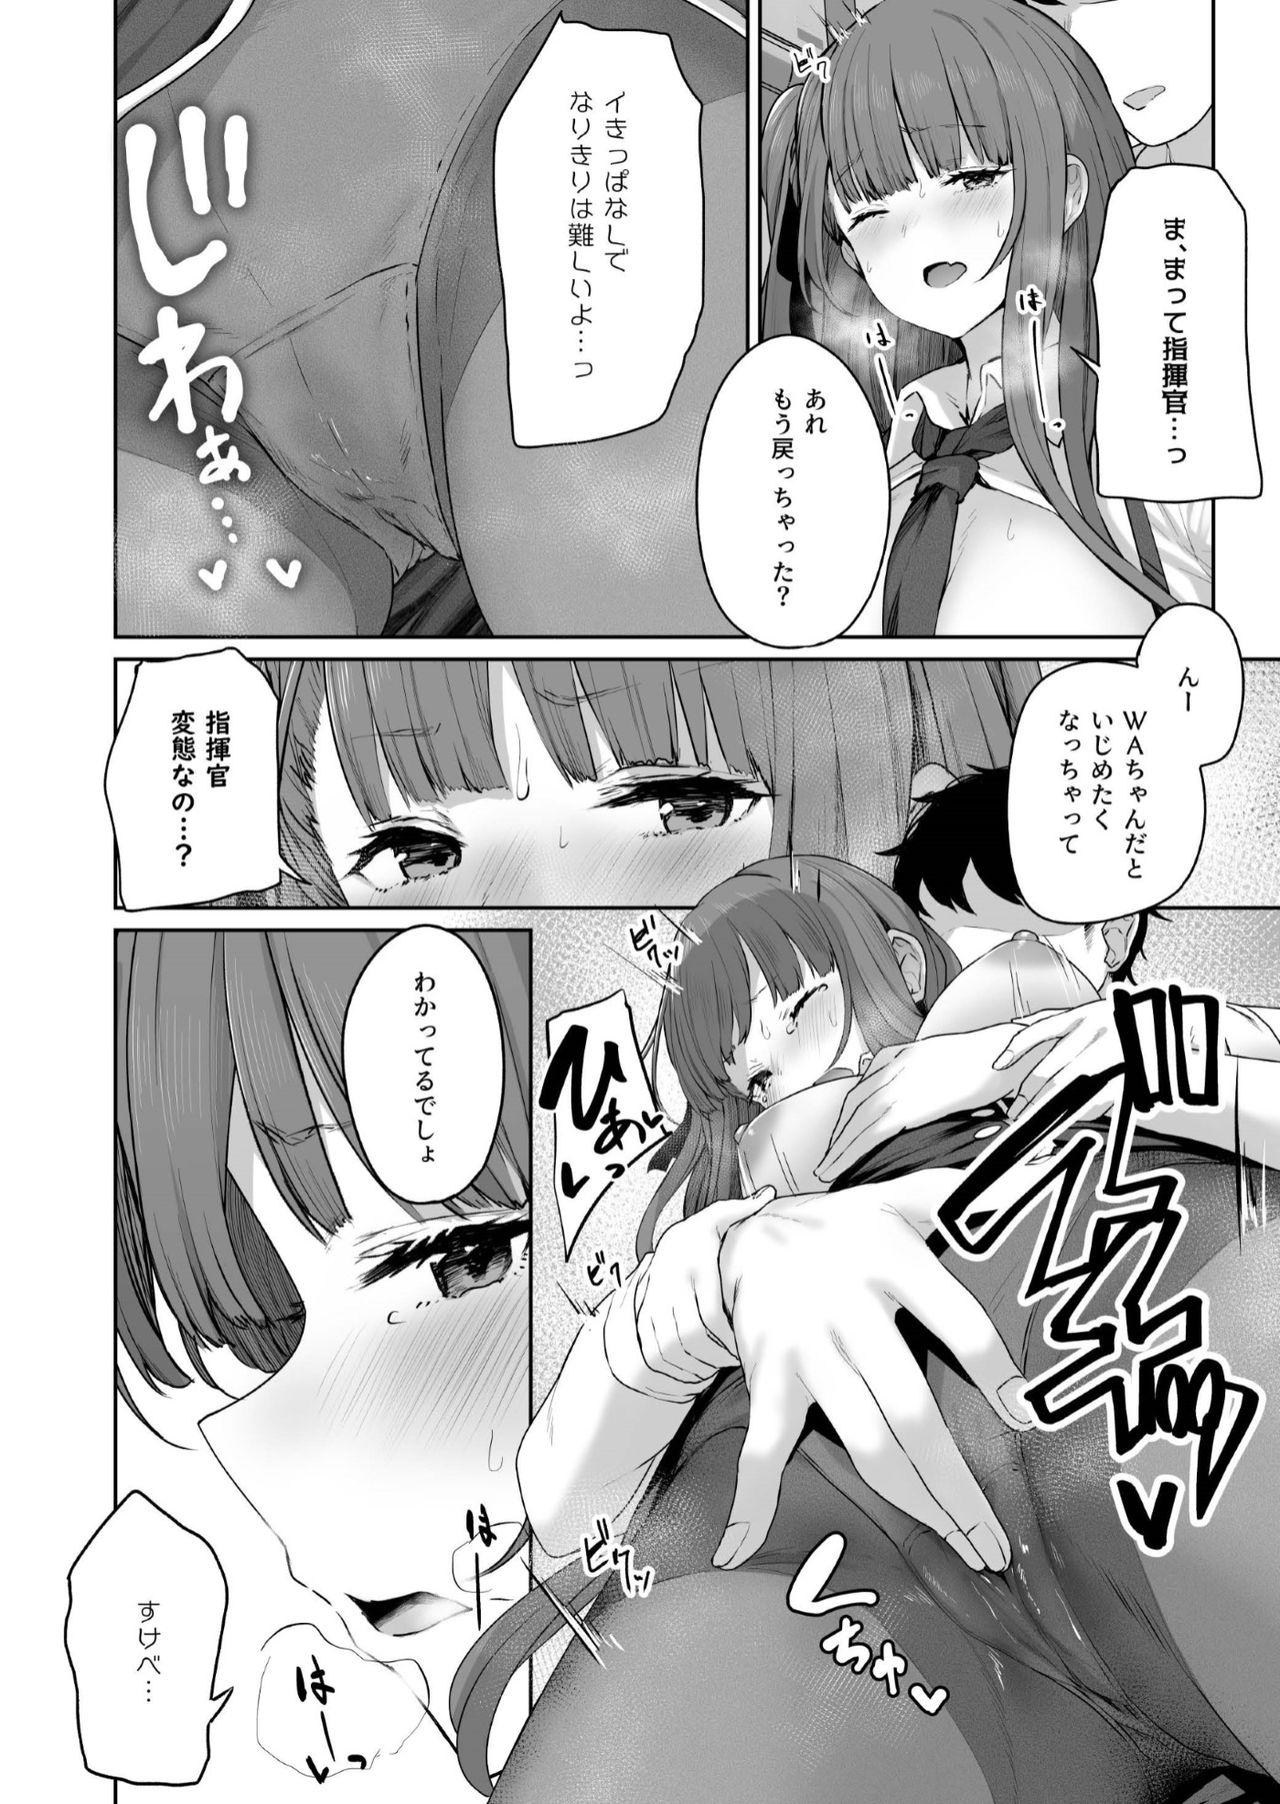 Panocha Yuiitsu Muni no Mono nan Dakara - Girls frontline Gay Friend - Page 12